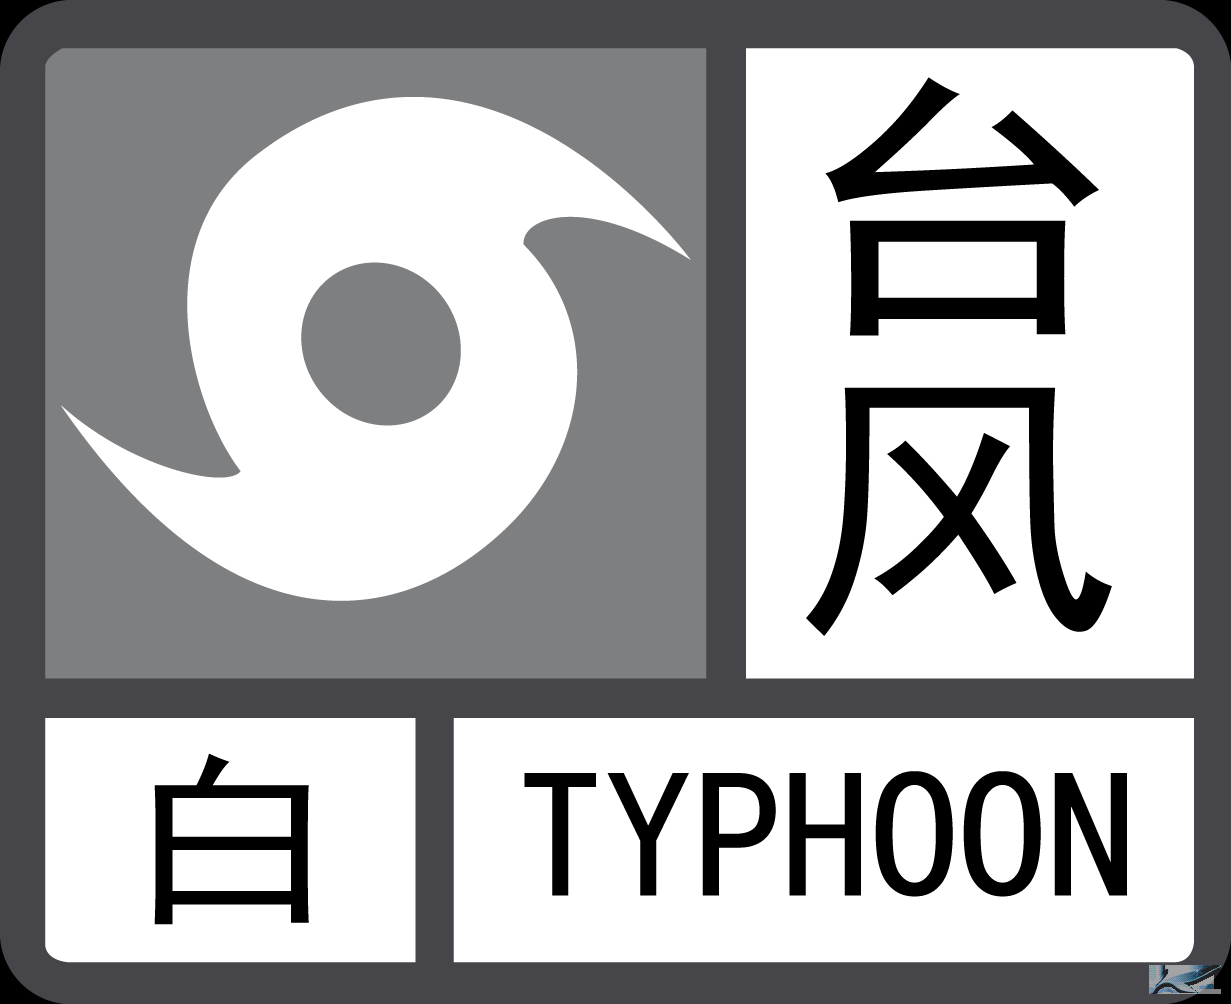 天气预报台风的标志图片